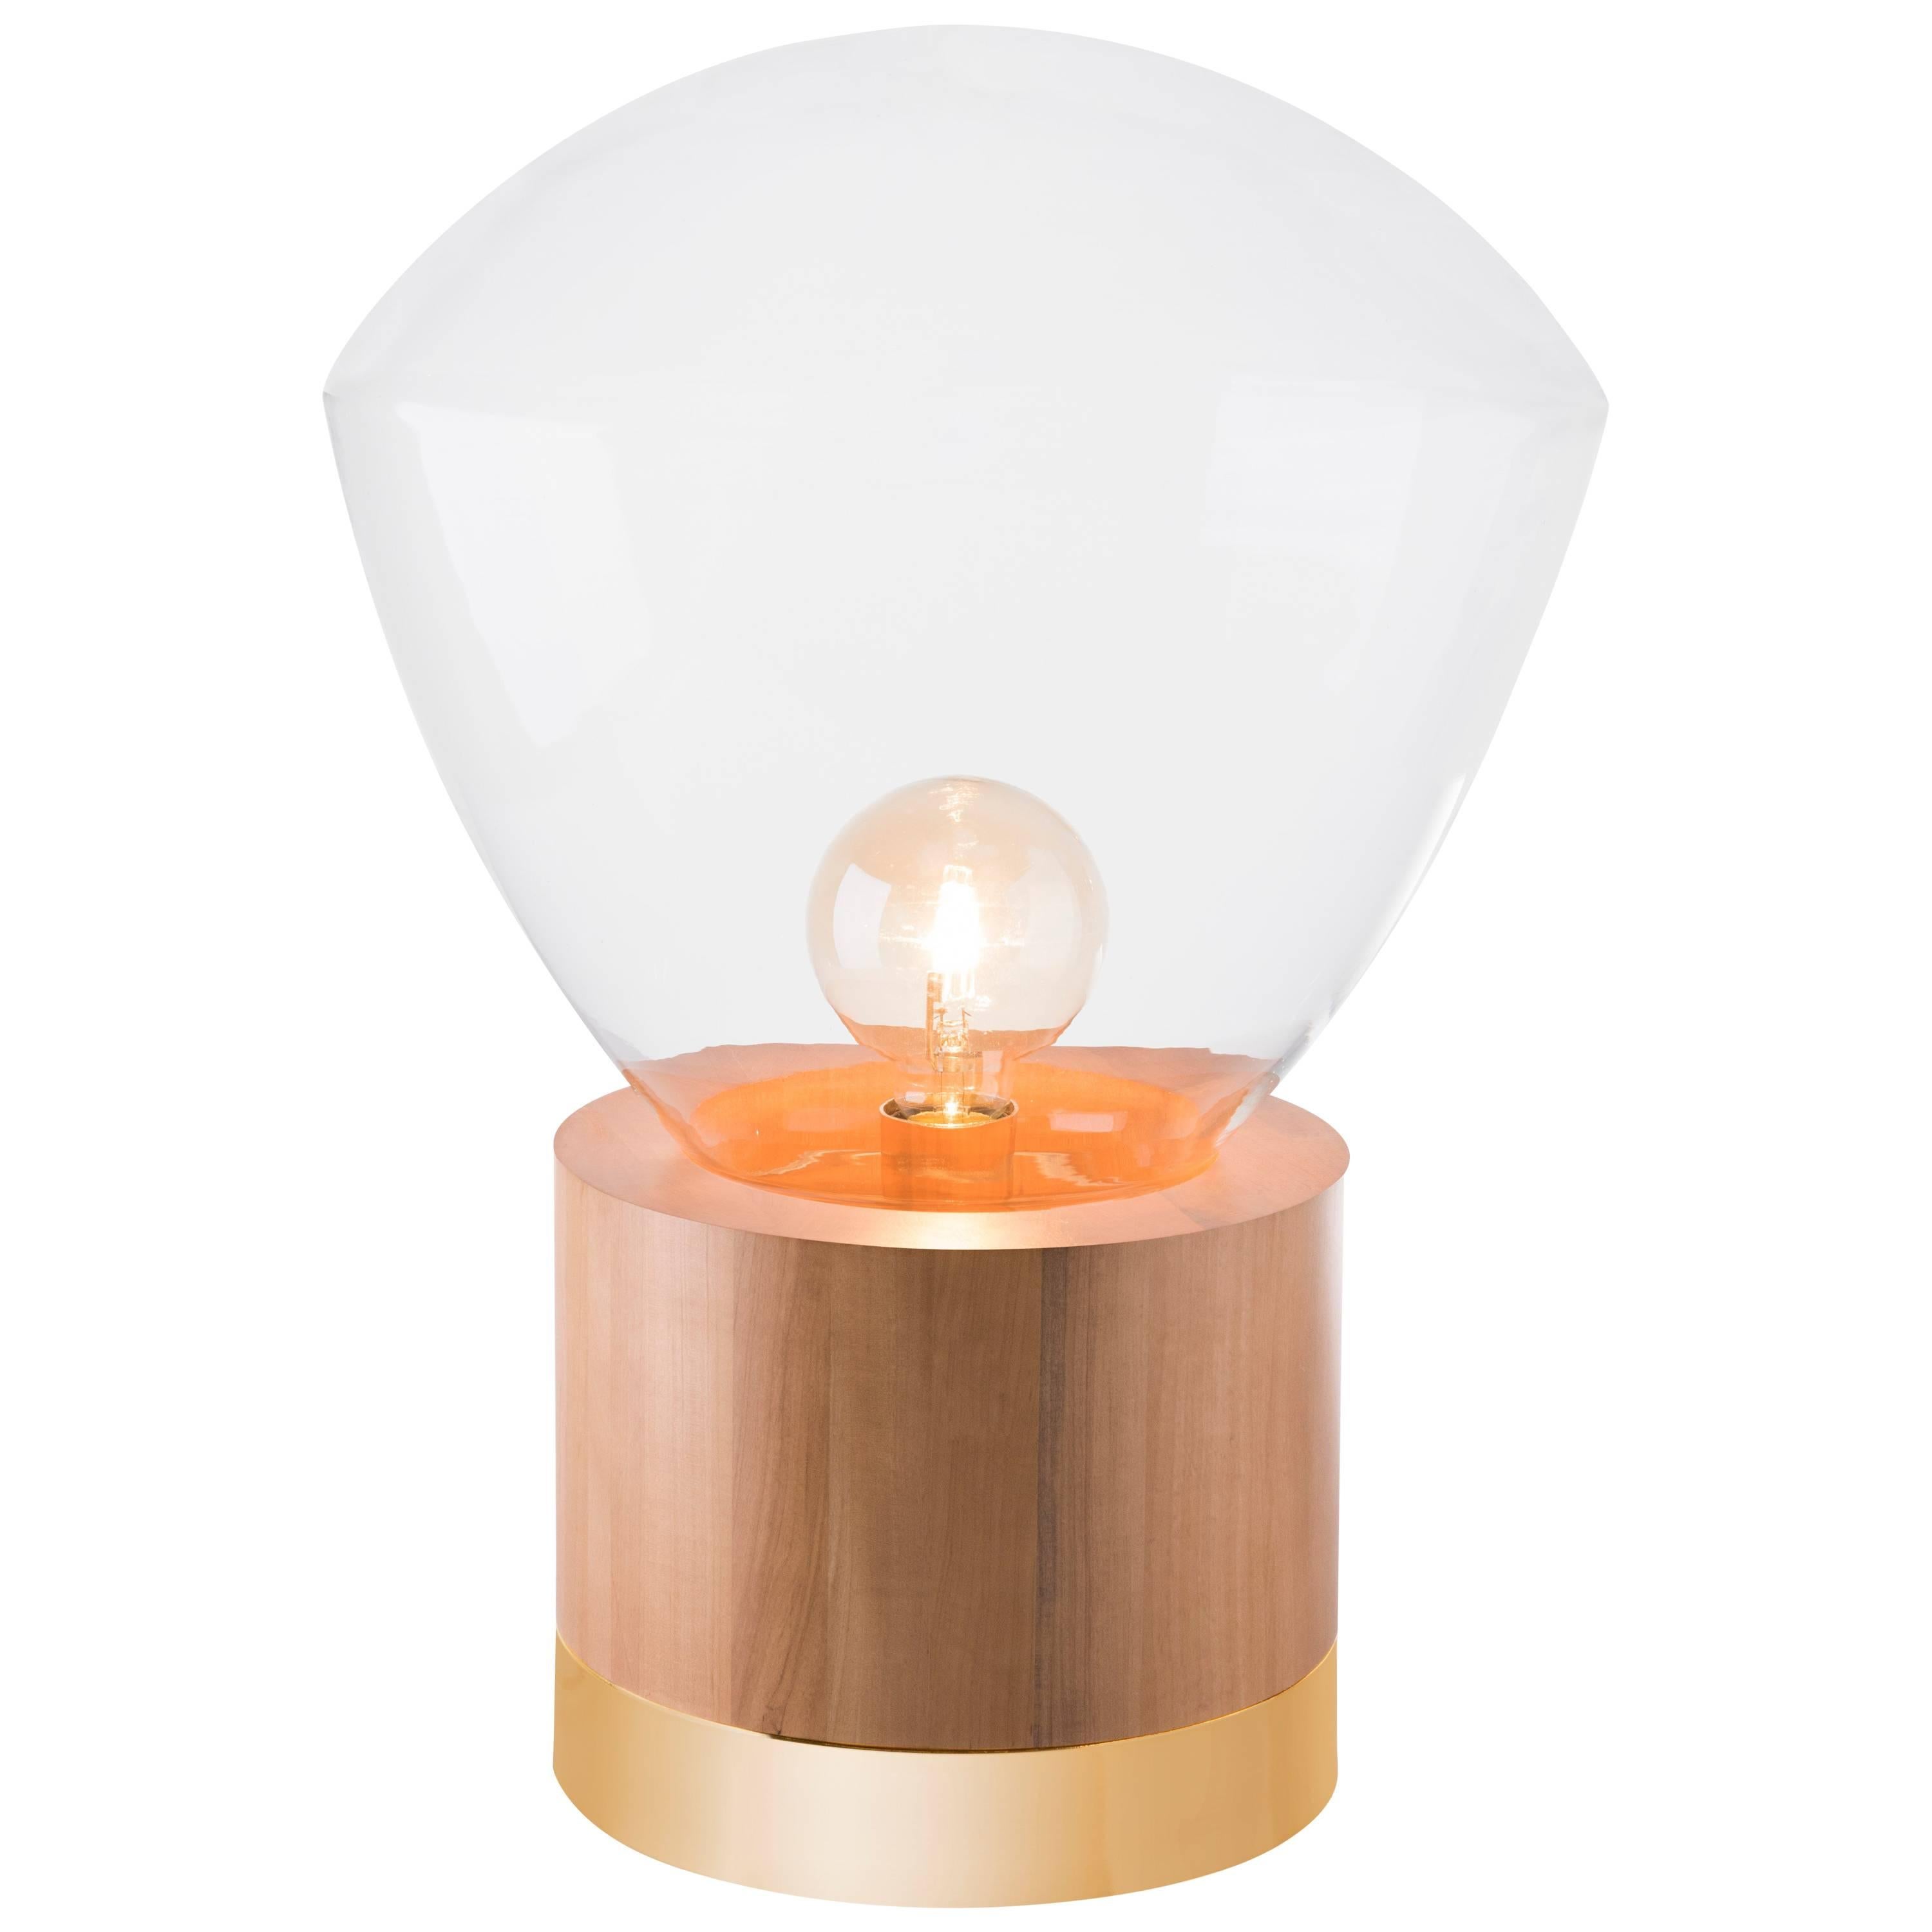 Table Lamp Lampadari #6, Brazilian Wood, Metal and Glass For Sale